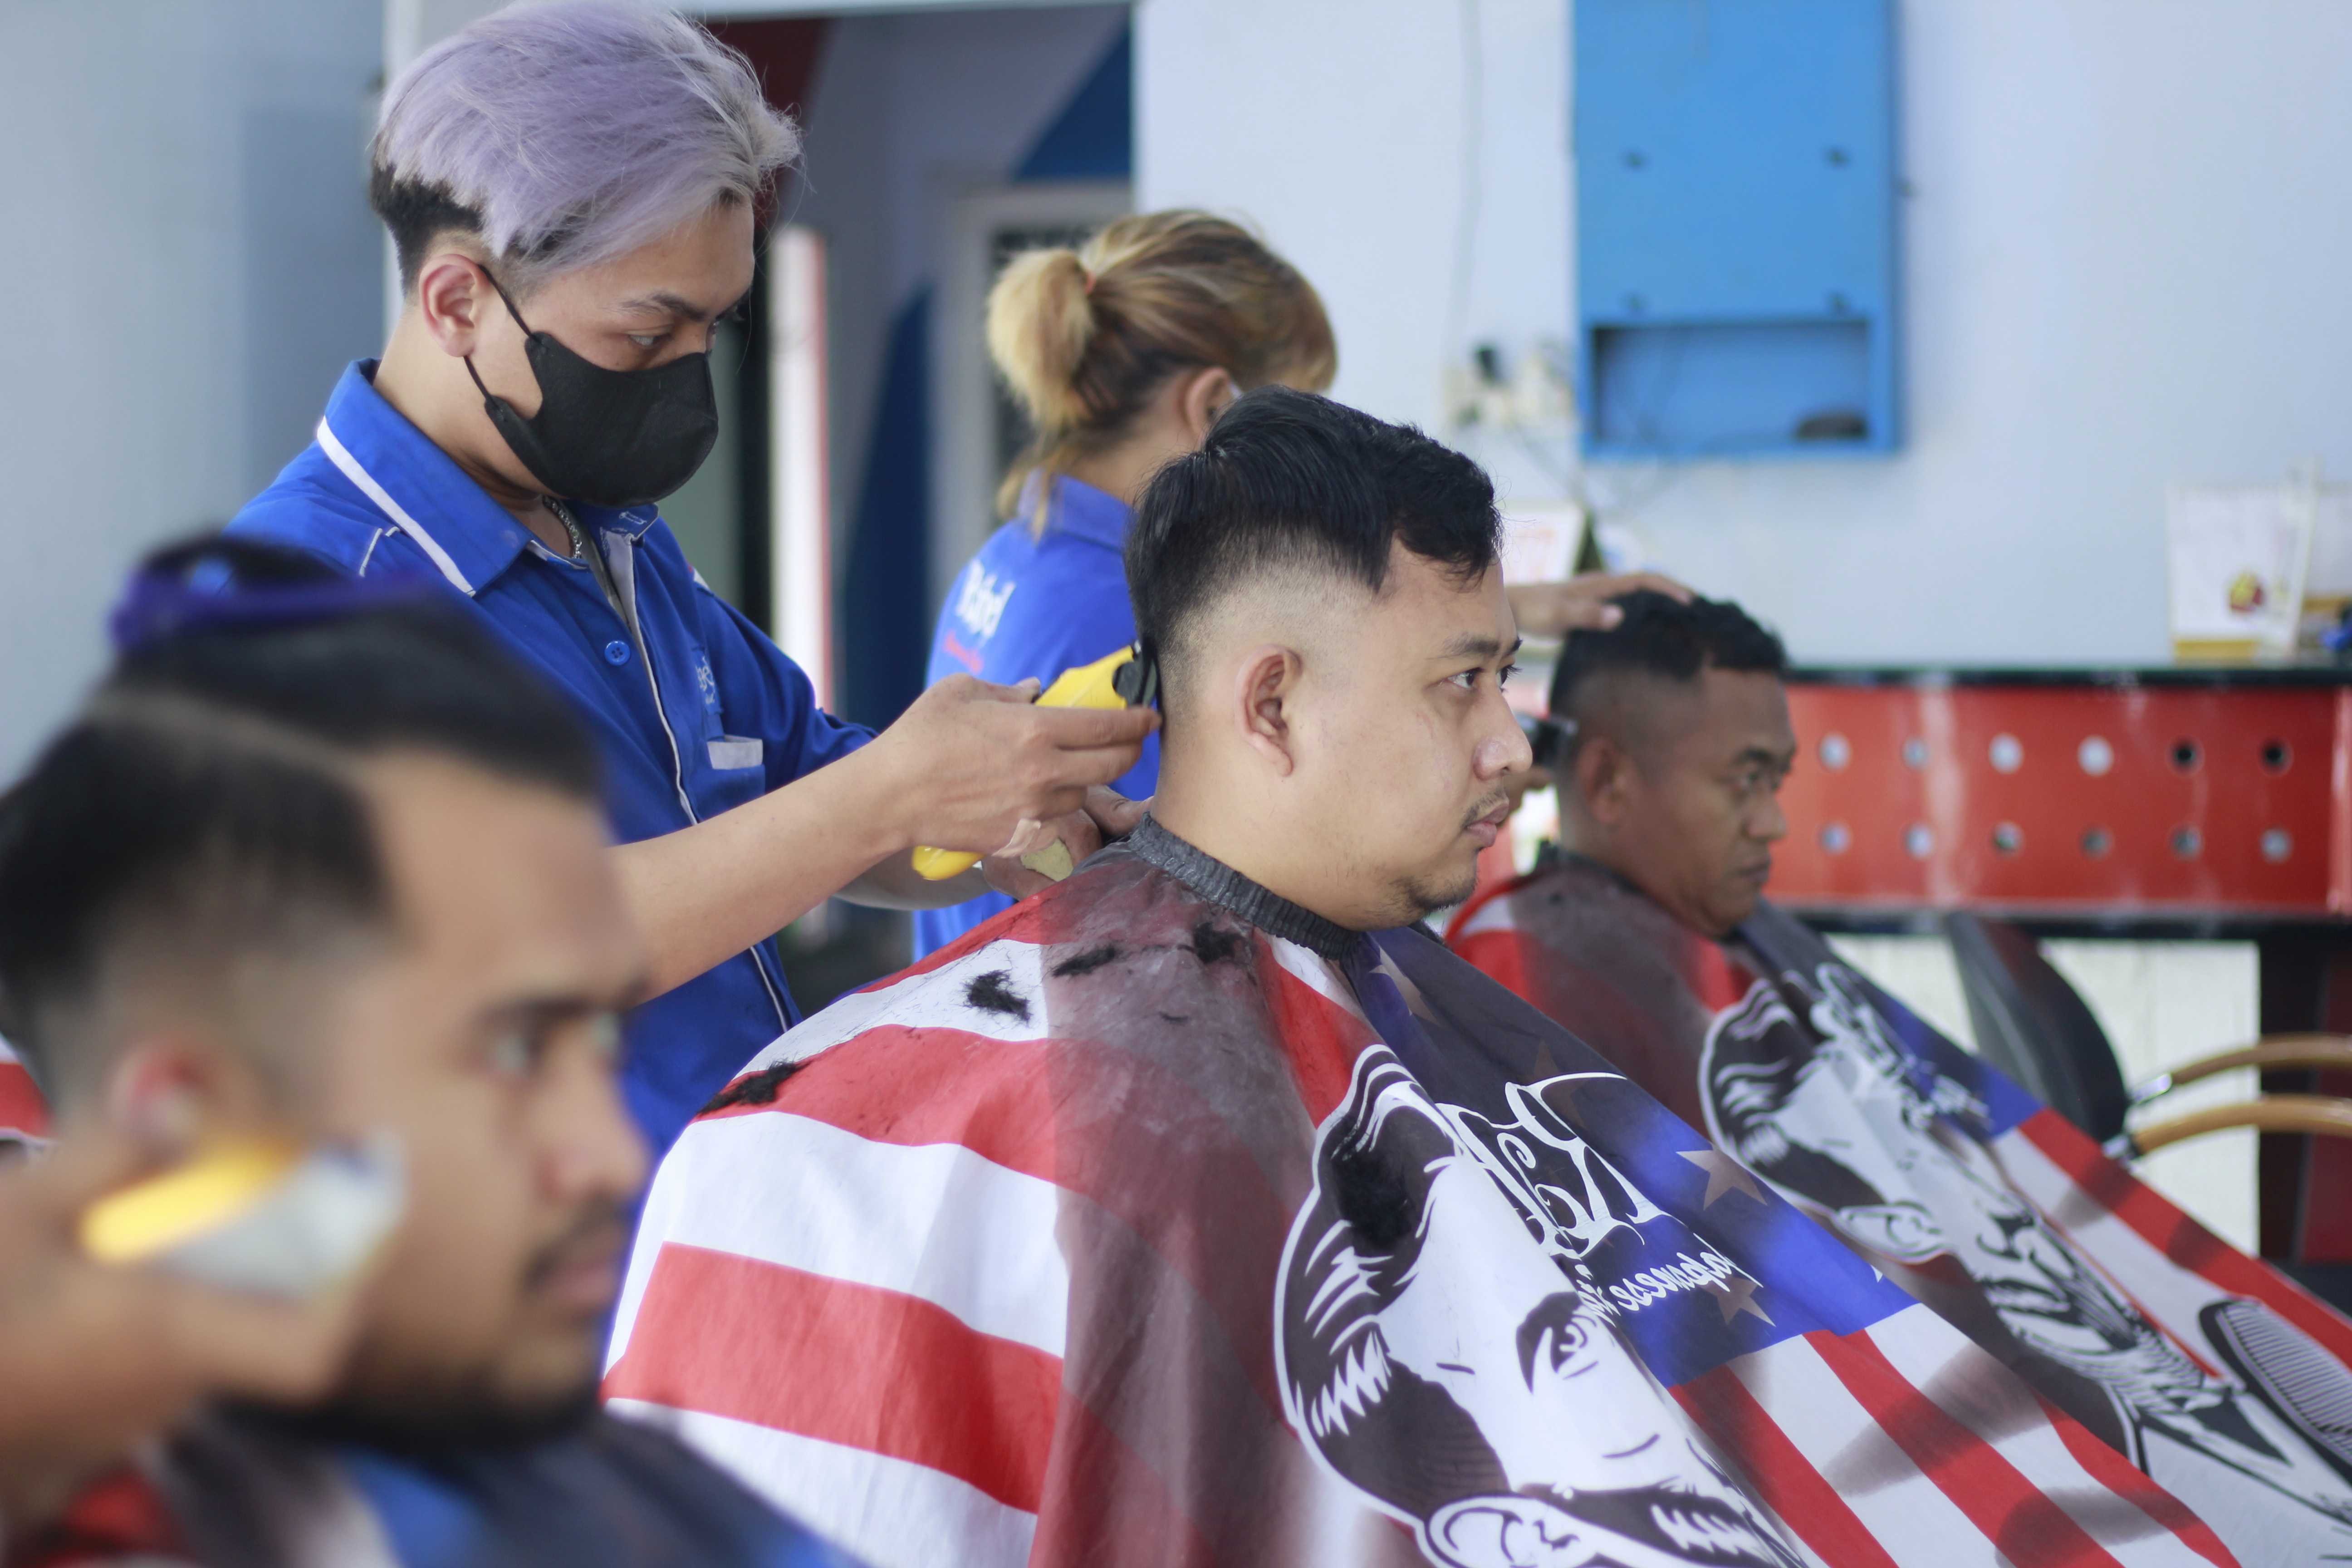 Rekomendasi Tempat Barbershop Di Jl. Tumenggung Suryo Profesional